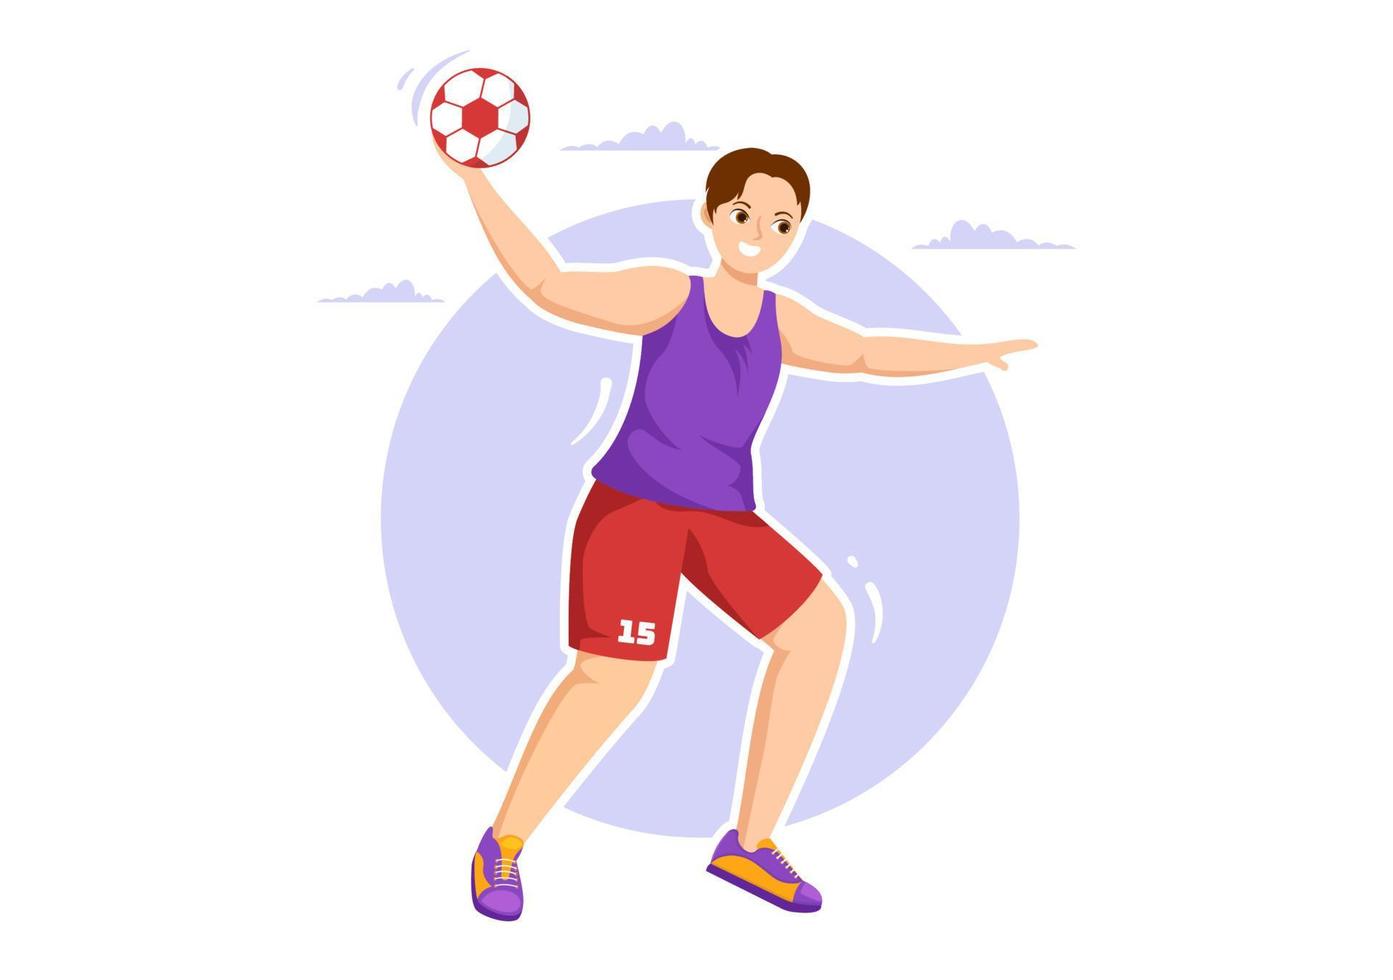 ilustração de handebol de um jogador tocando a bola com a mão e marcando um gol em um modelo de desenho de mão plana de desenho animado de competição esportiva vetor